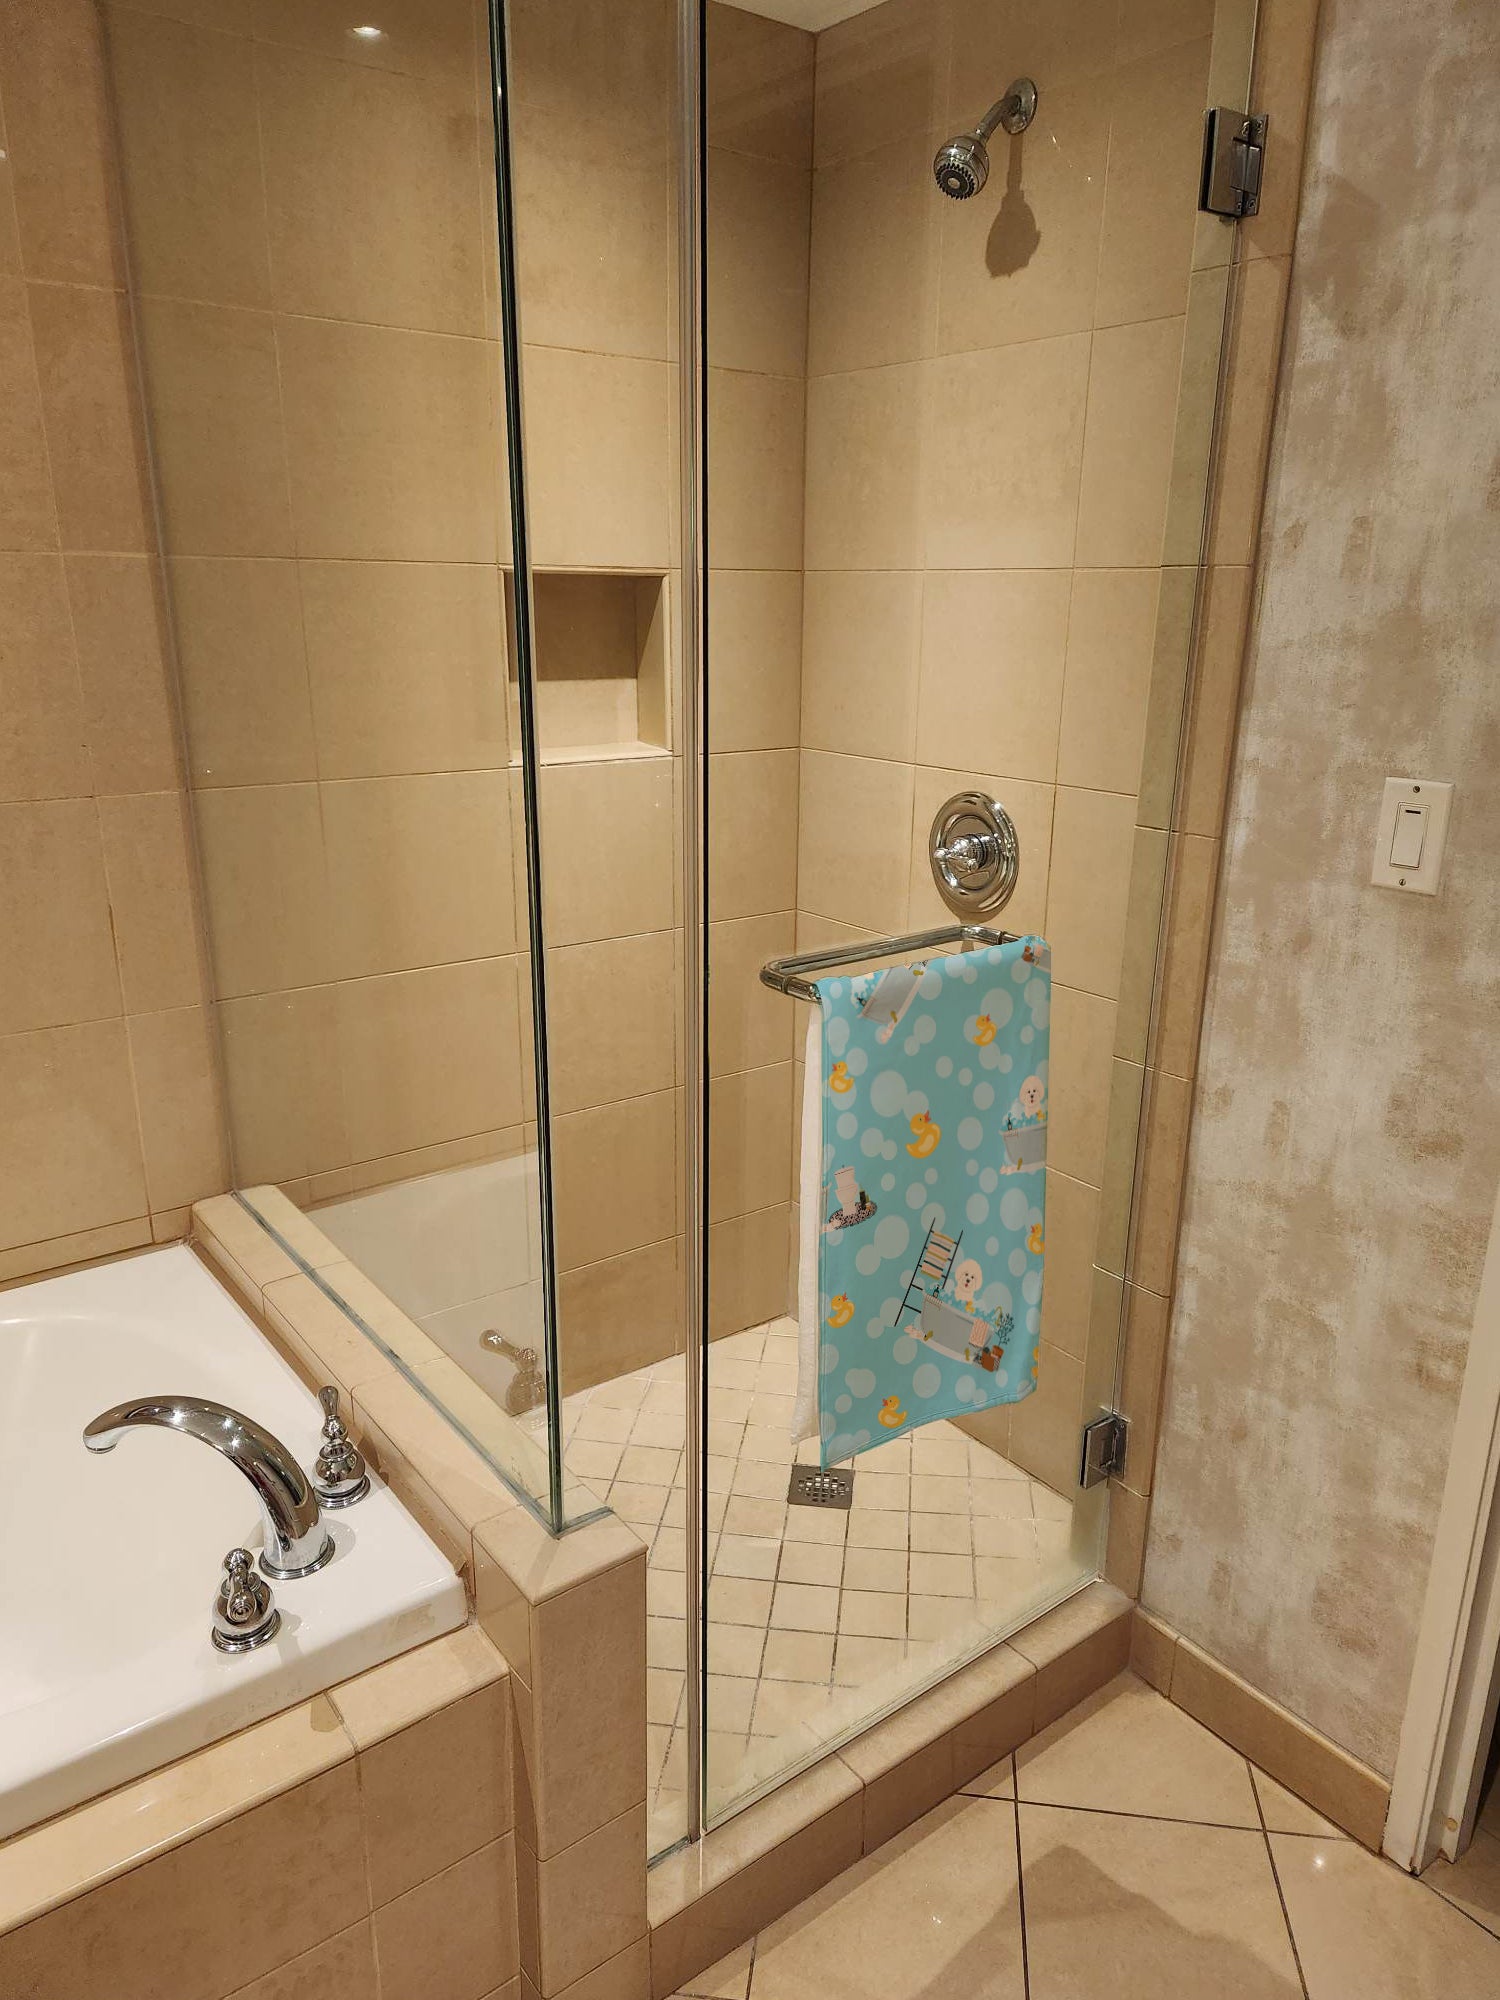 Bichon Frise in Bathtub Bath Towel Large